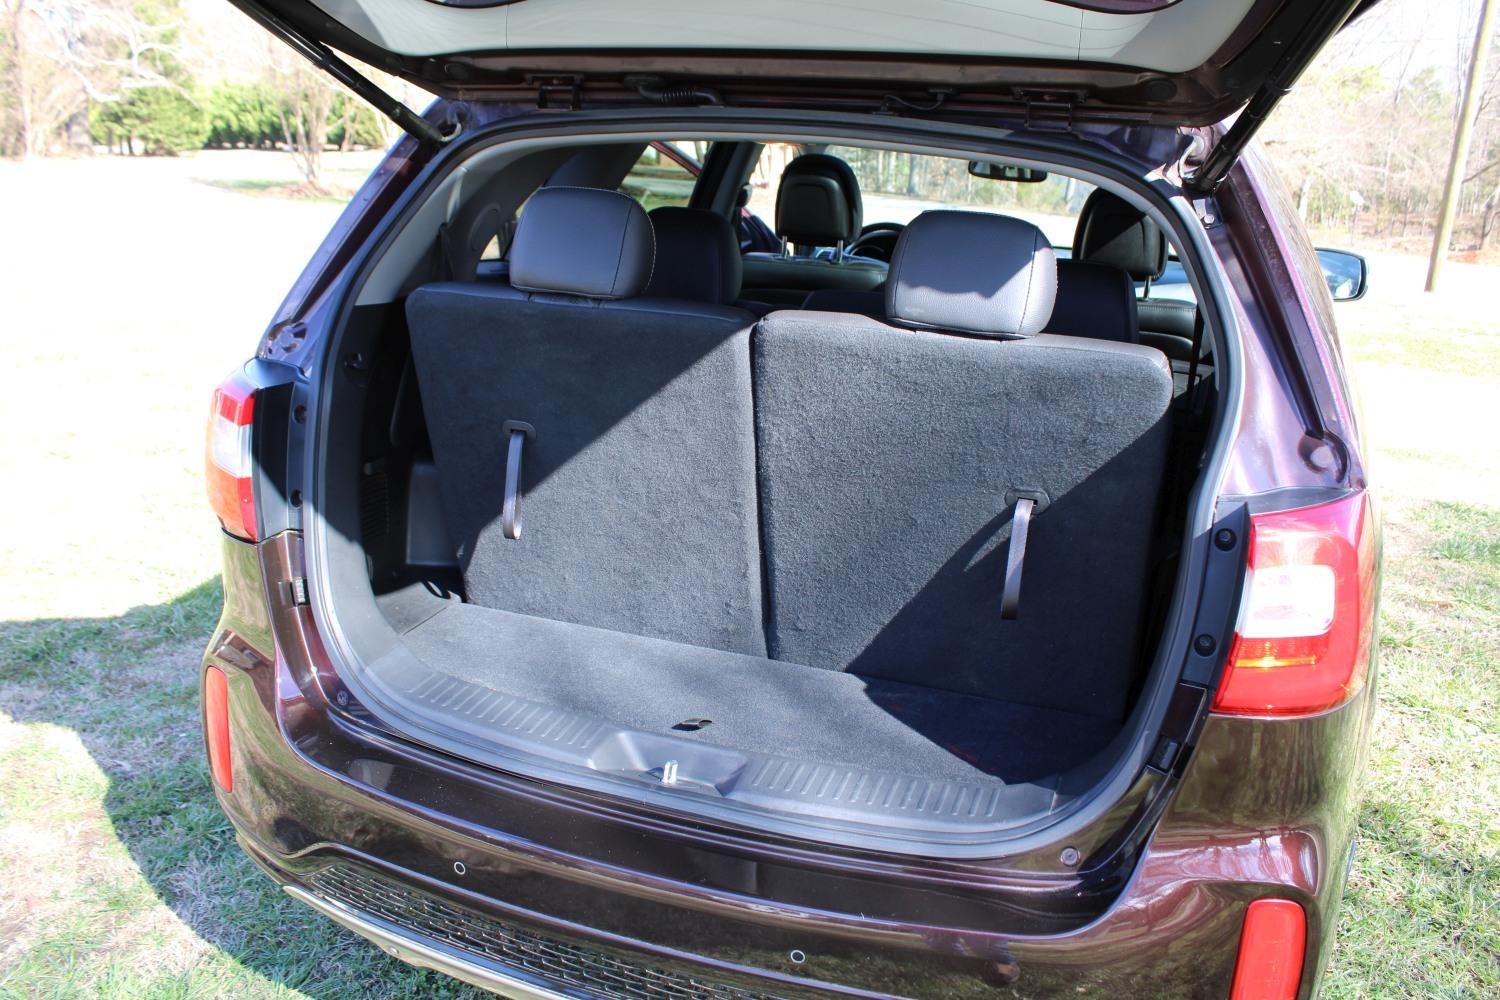 2015 Kia Sorento SX V6 4-Door SUV w/62,776 Miles